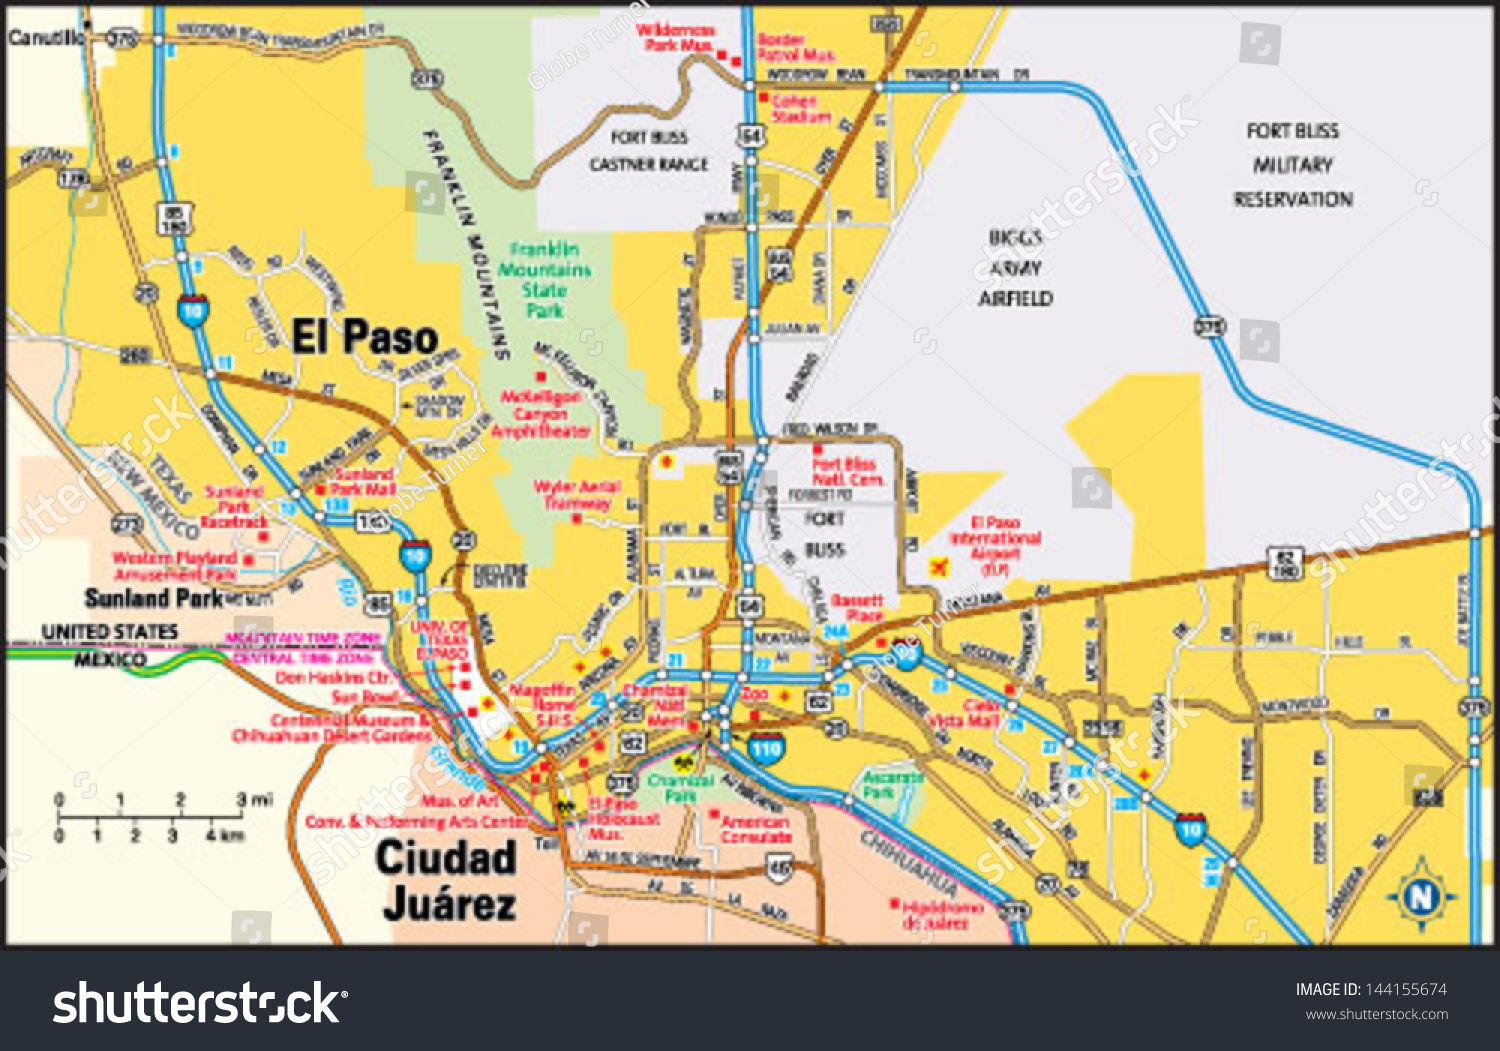 Map Of El Paso Texas Area